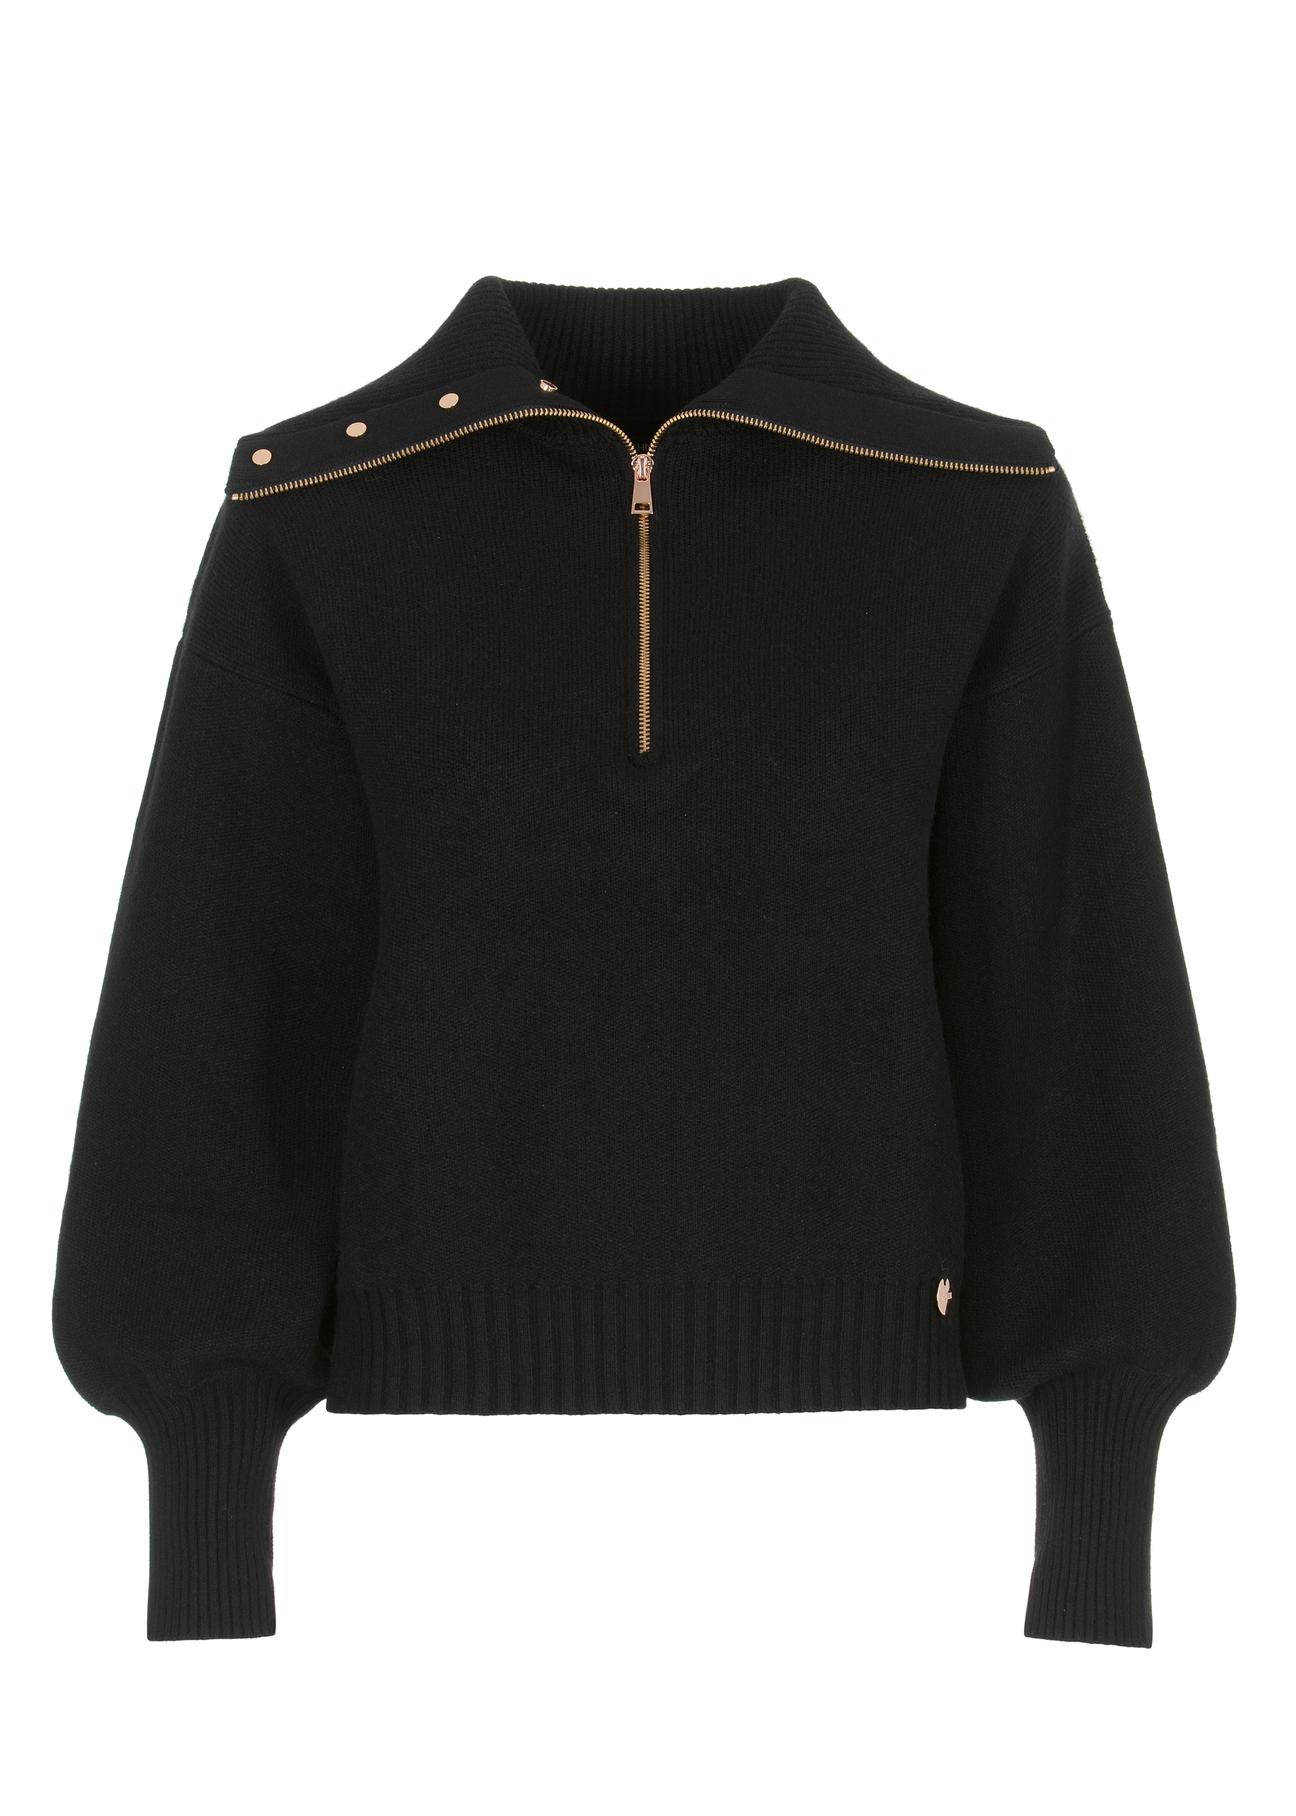 Rozsuwany sweter damski SWEDT-0171-99(Z22)